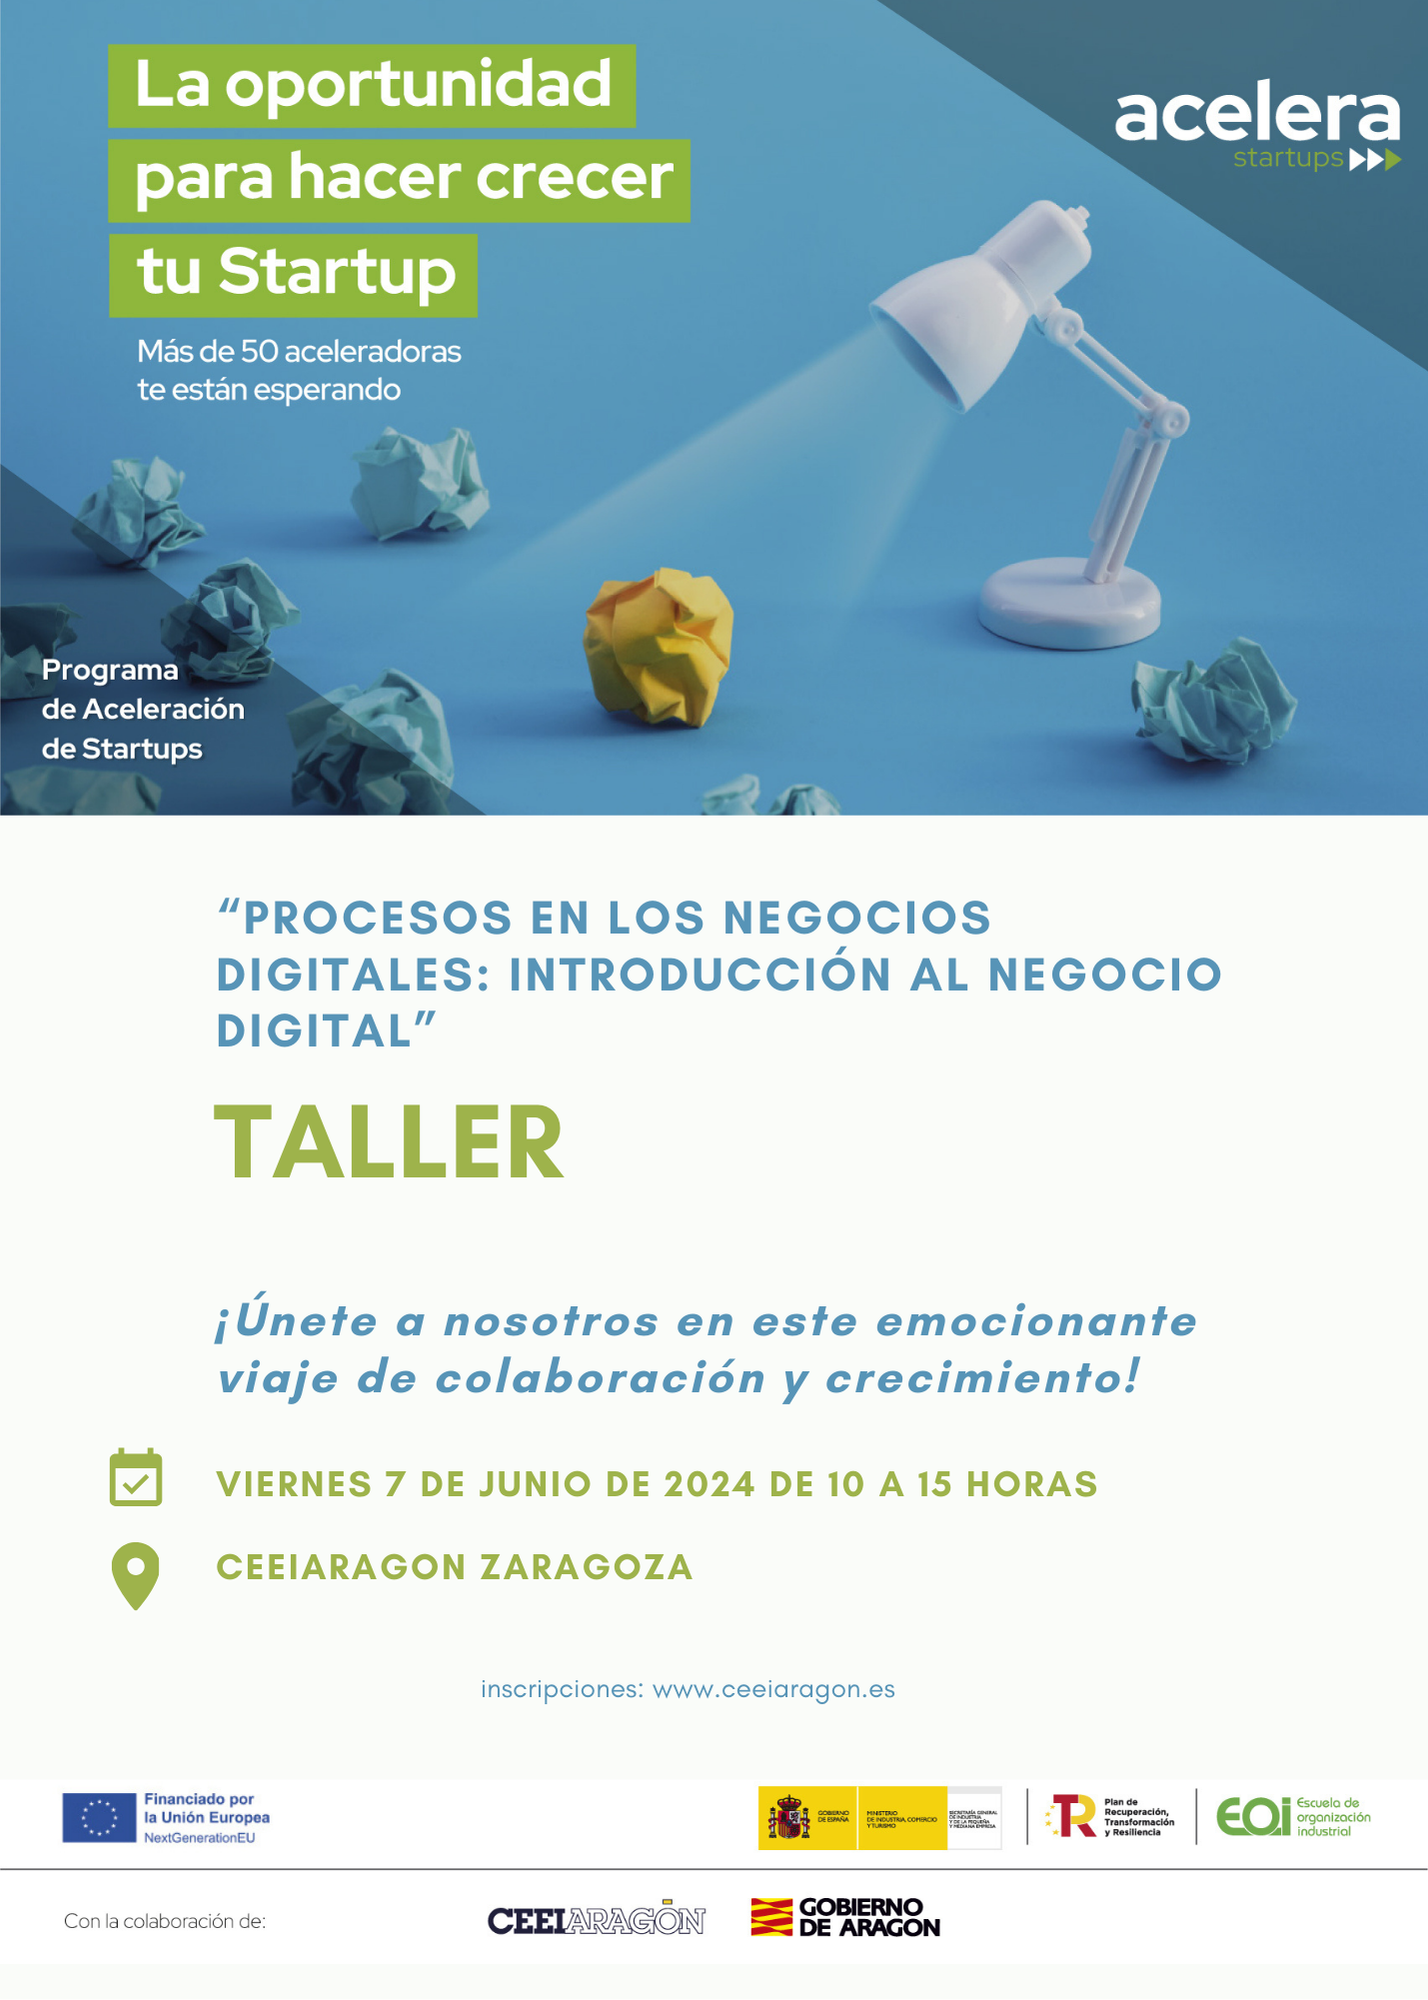 Acelera Startups Program Workshop “Digital business processes: introduction to digital business”